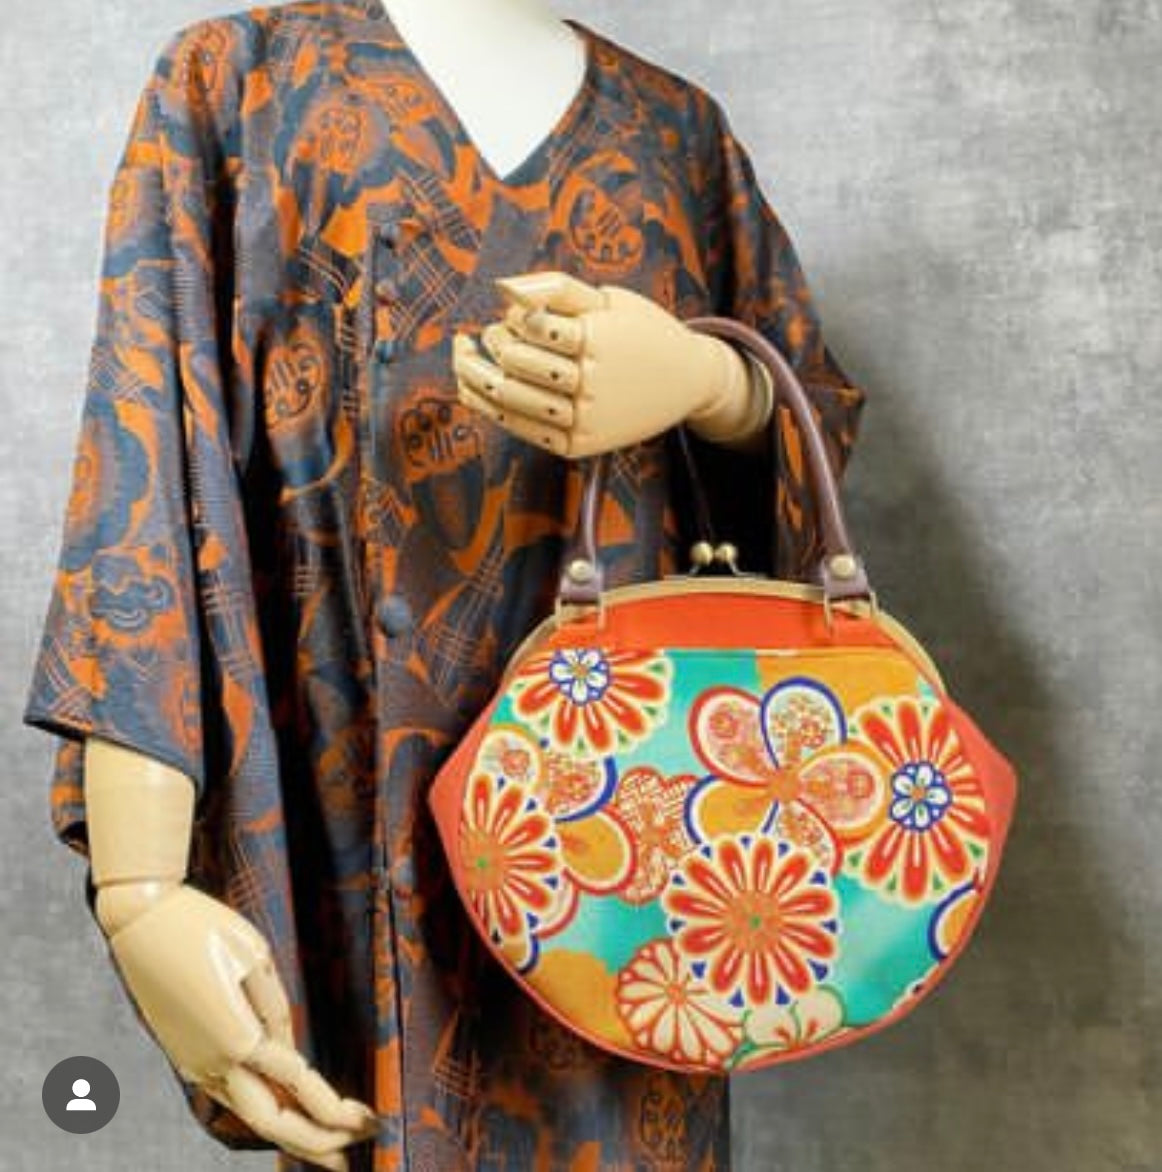 【Orange/Blumen】 Gamaguchi-en/Handtasche, Clutch, Beutel, japanische Tasche, Umhängetasche, japanische Geschenke